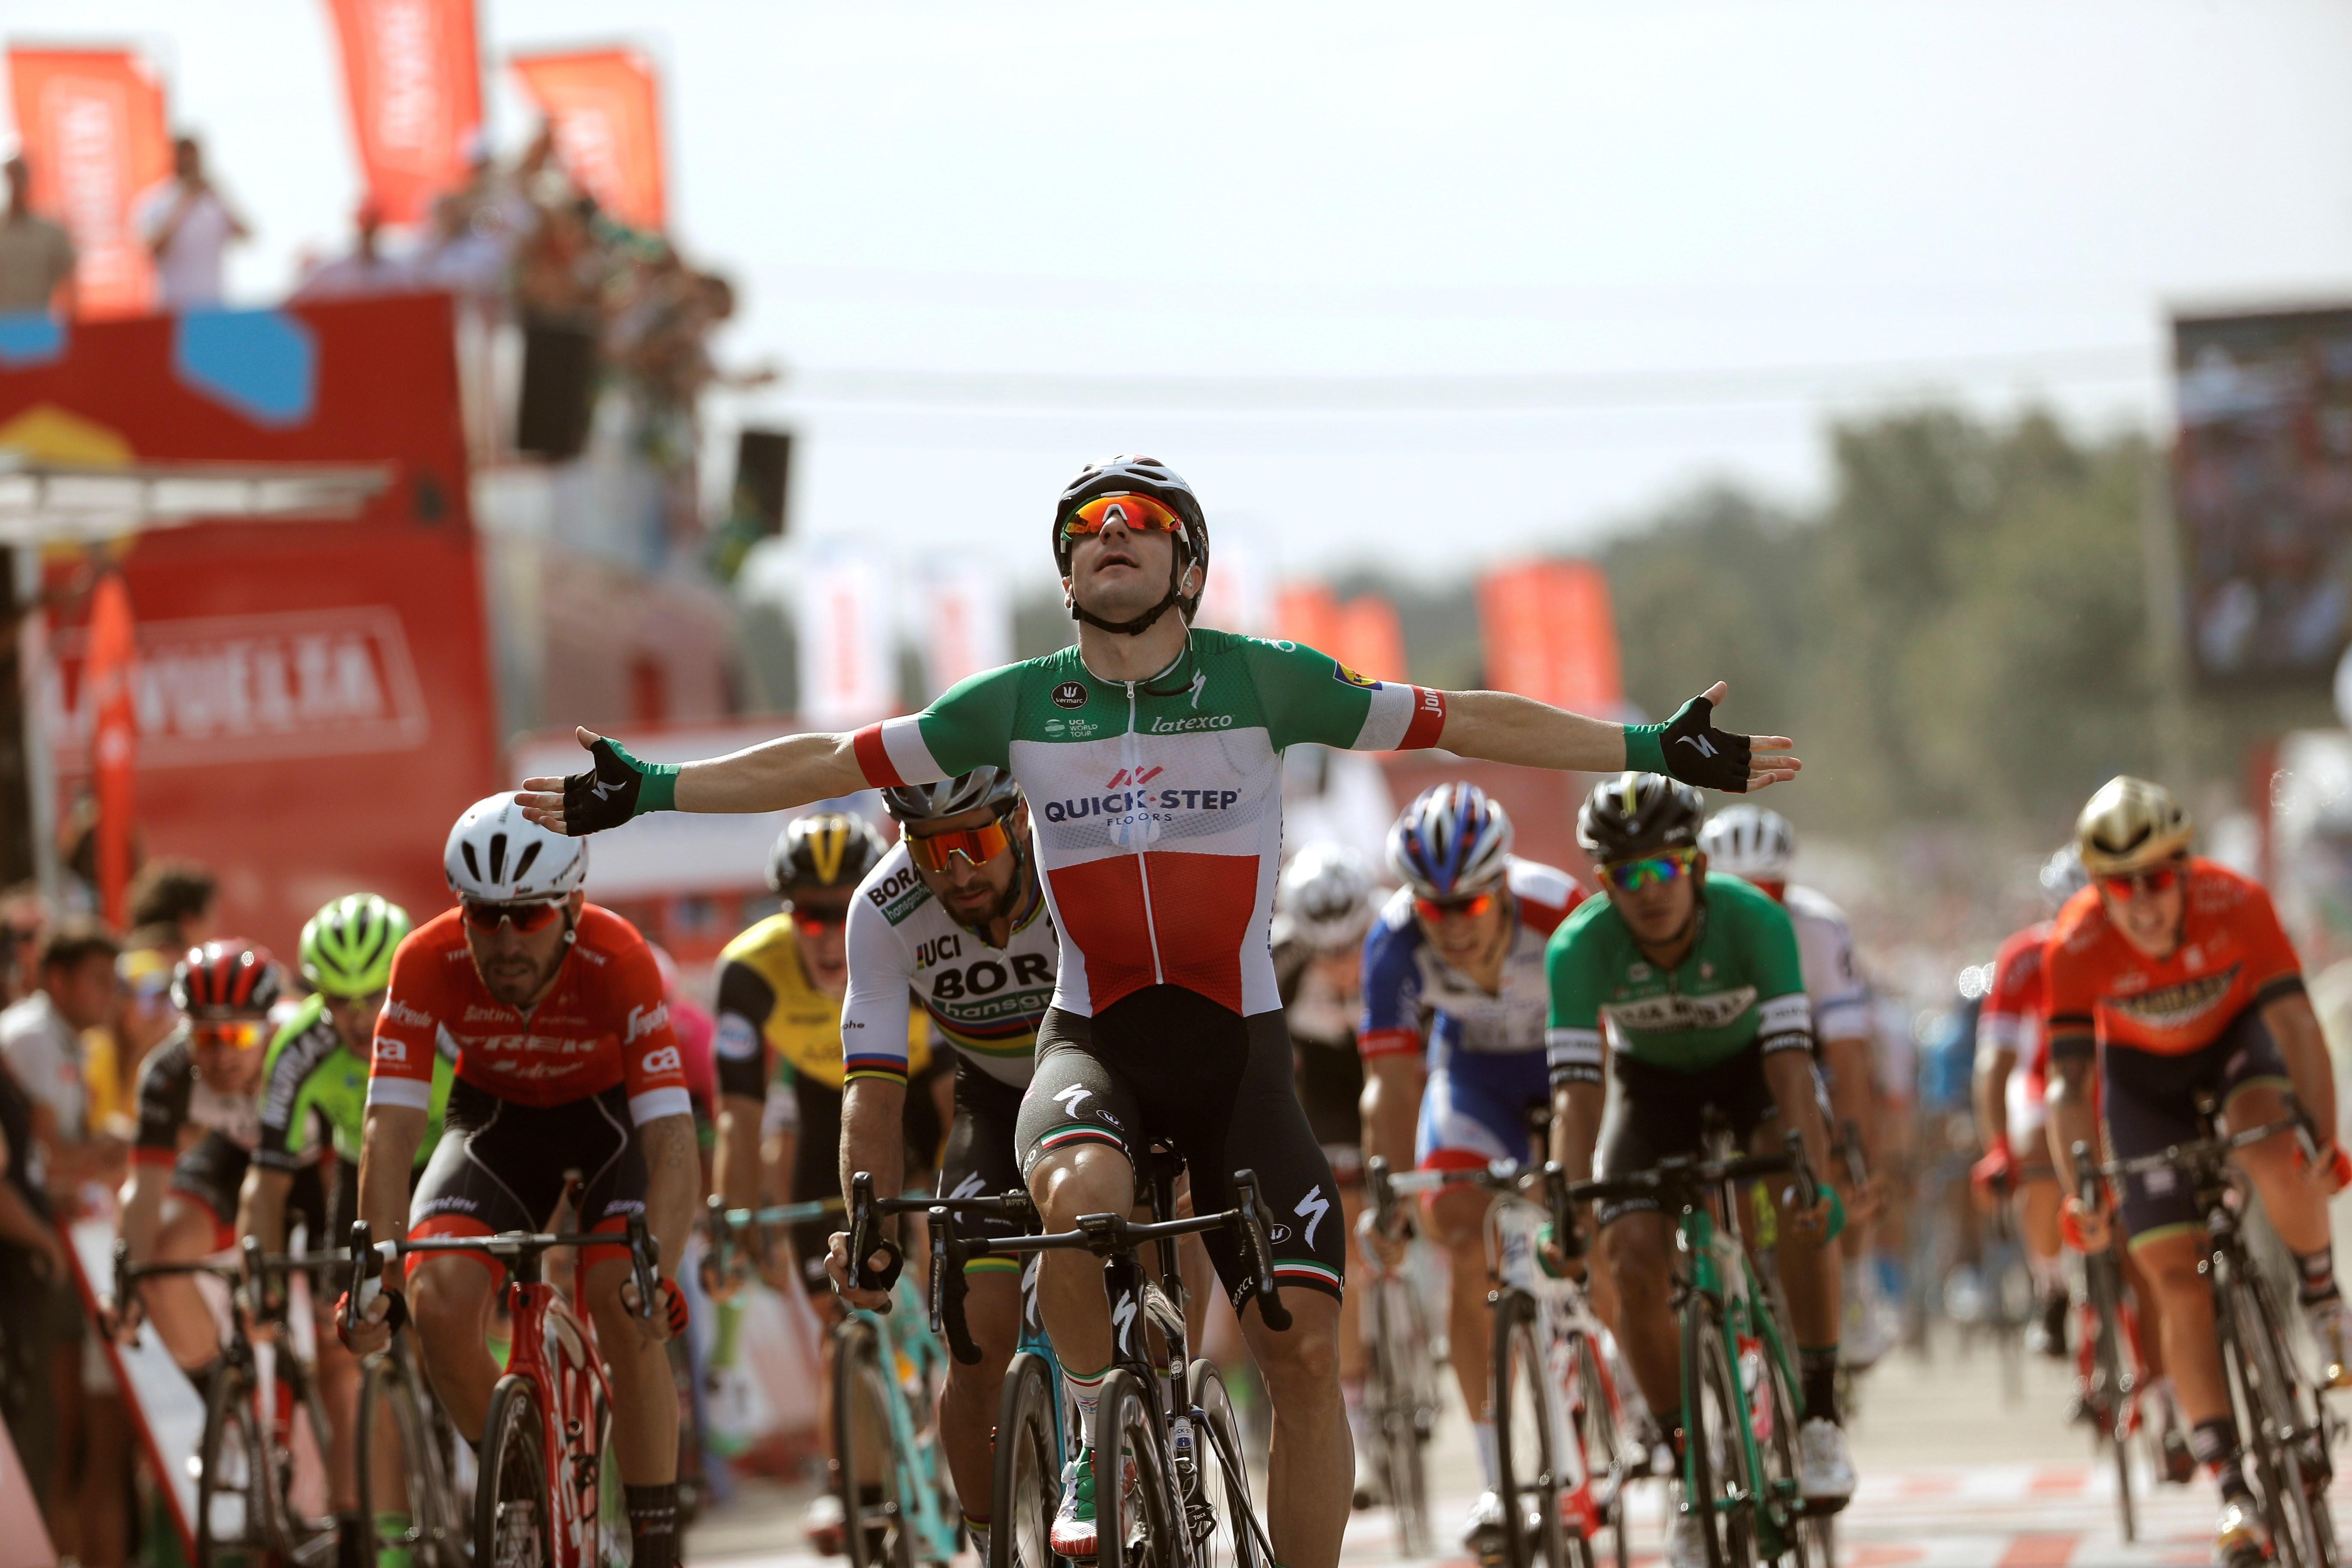 Lliçó de Viviani a Sagan a la Vuelta per fer el doblet